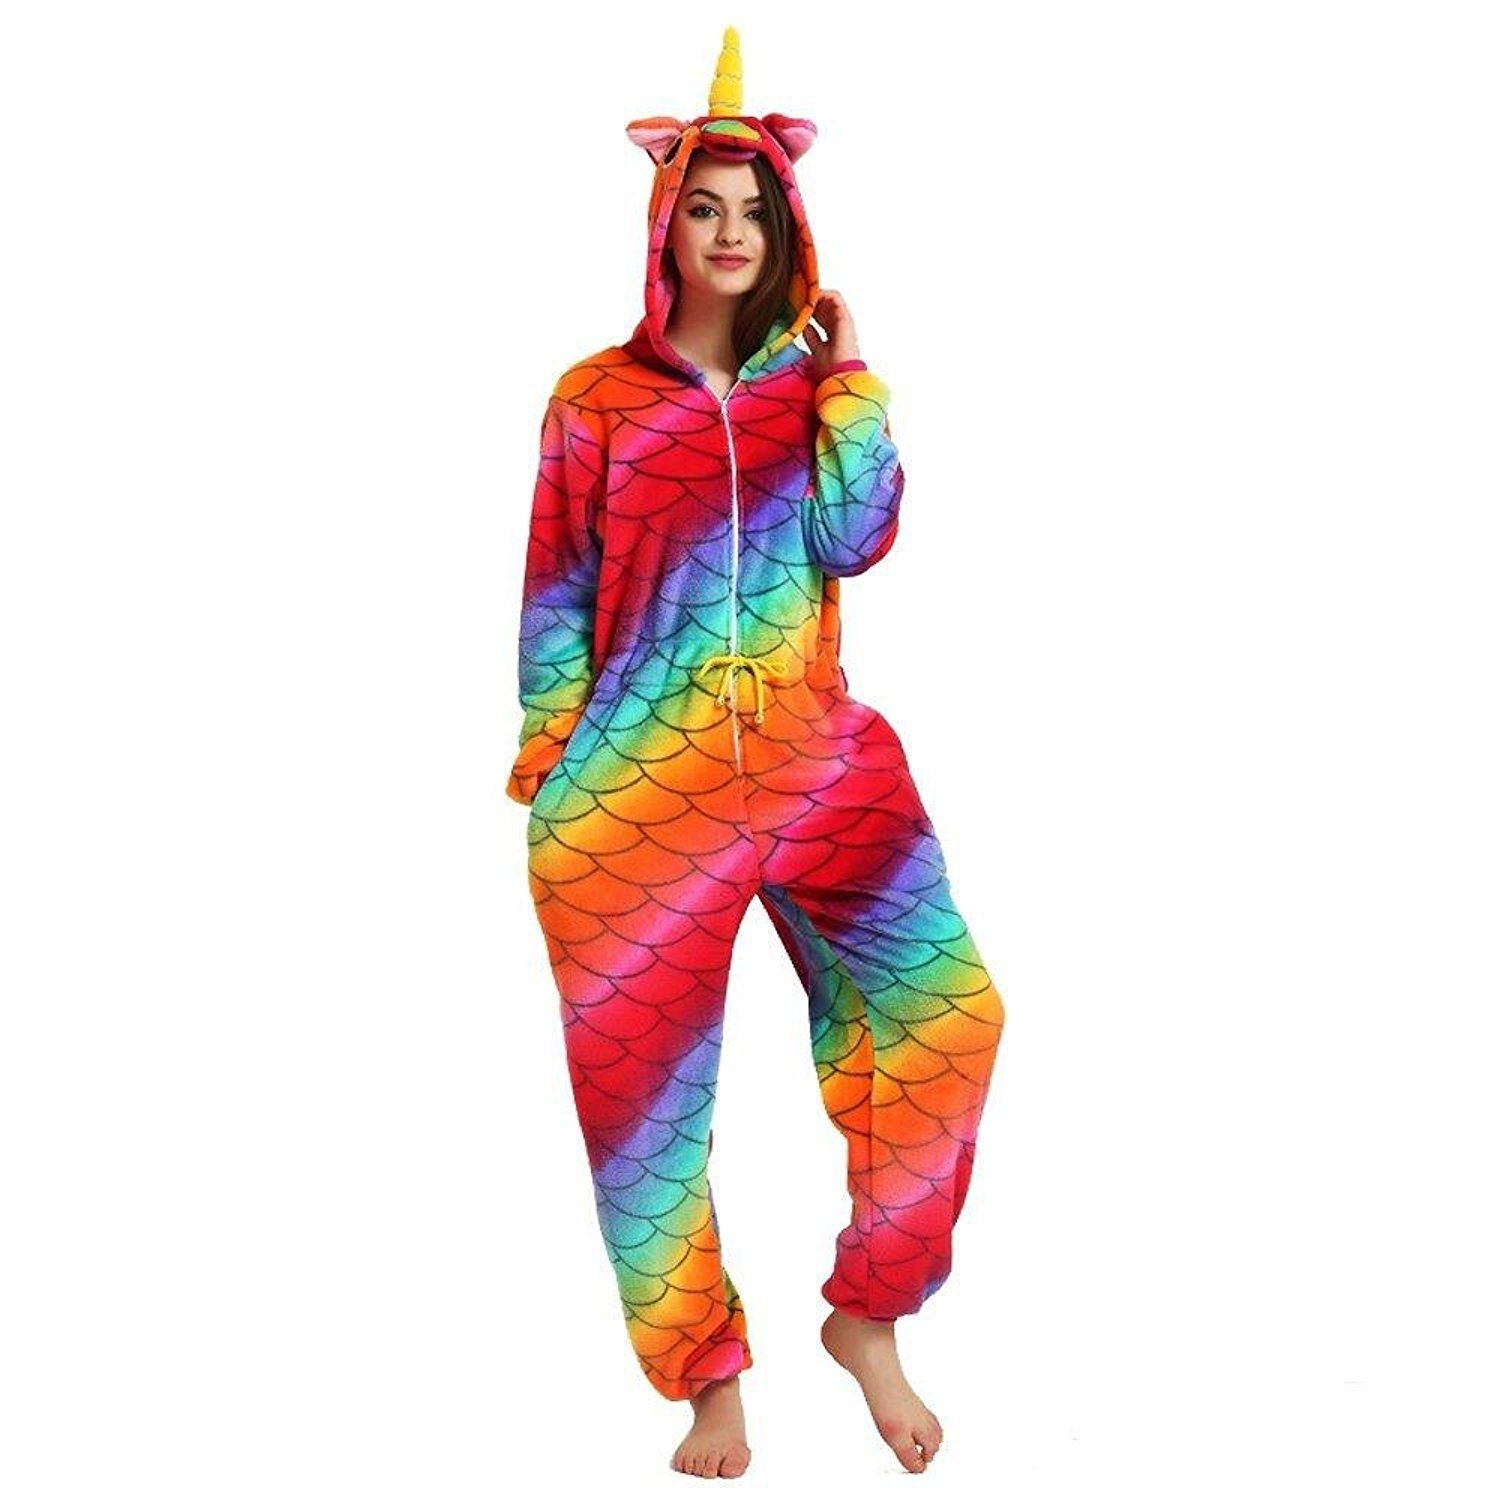 misslight Unicornio Pijamas Animal Ropa de Dormir Cosplay Disfraces Pijamas para Adulto Niños Juguetes y Juegos M, Mermaid2 